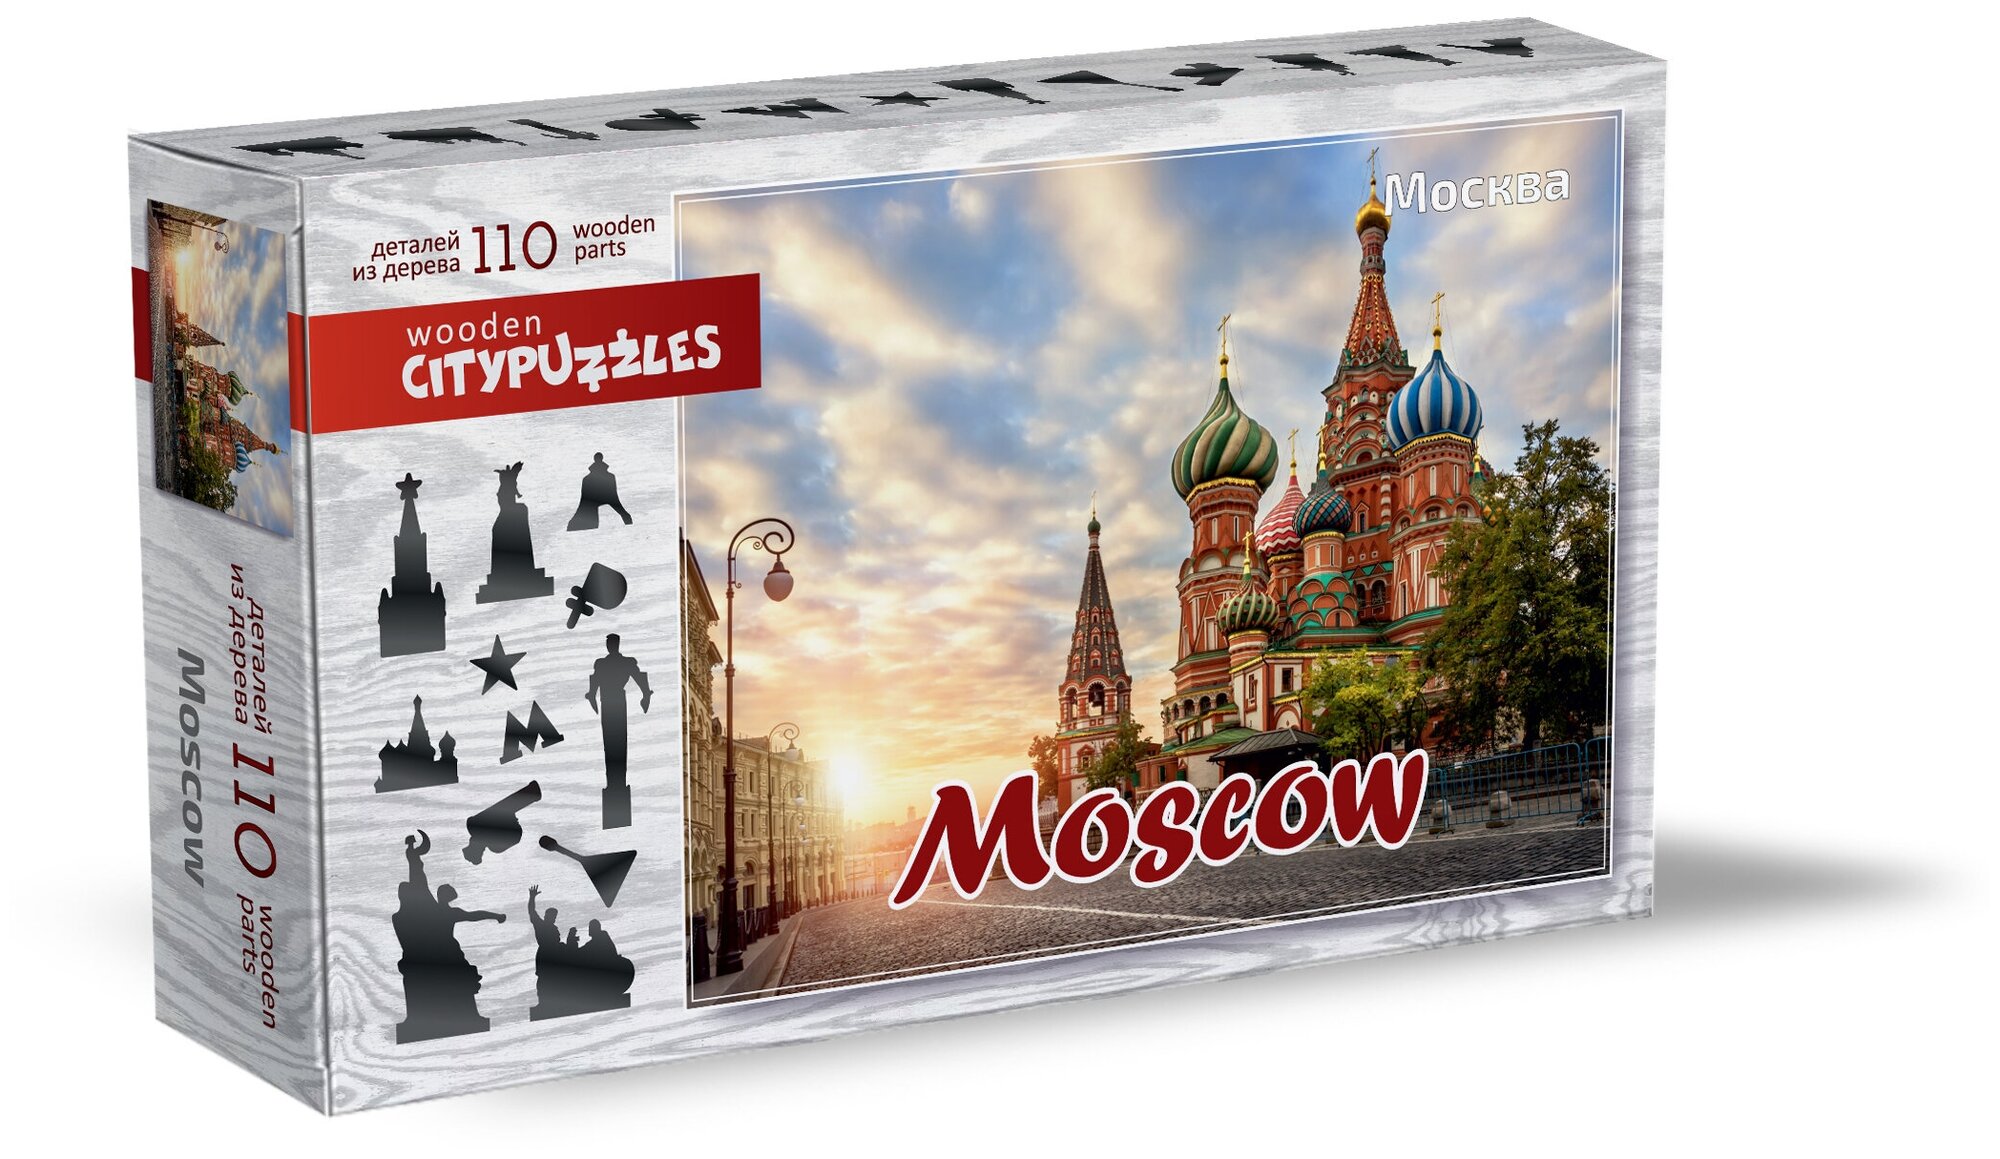 Citypuzzles "Москва"